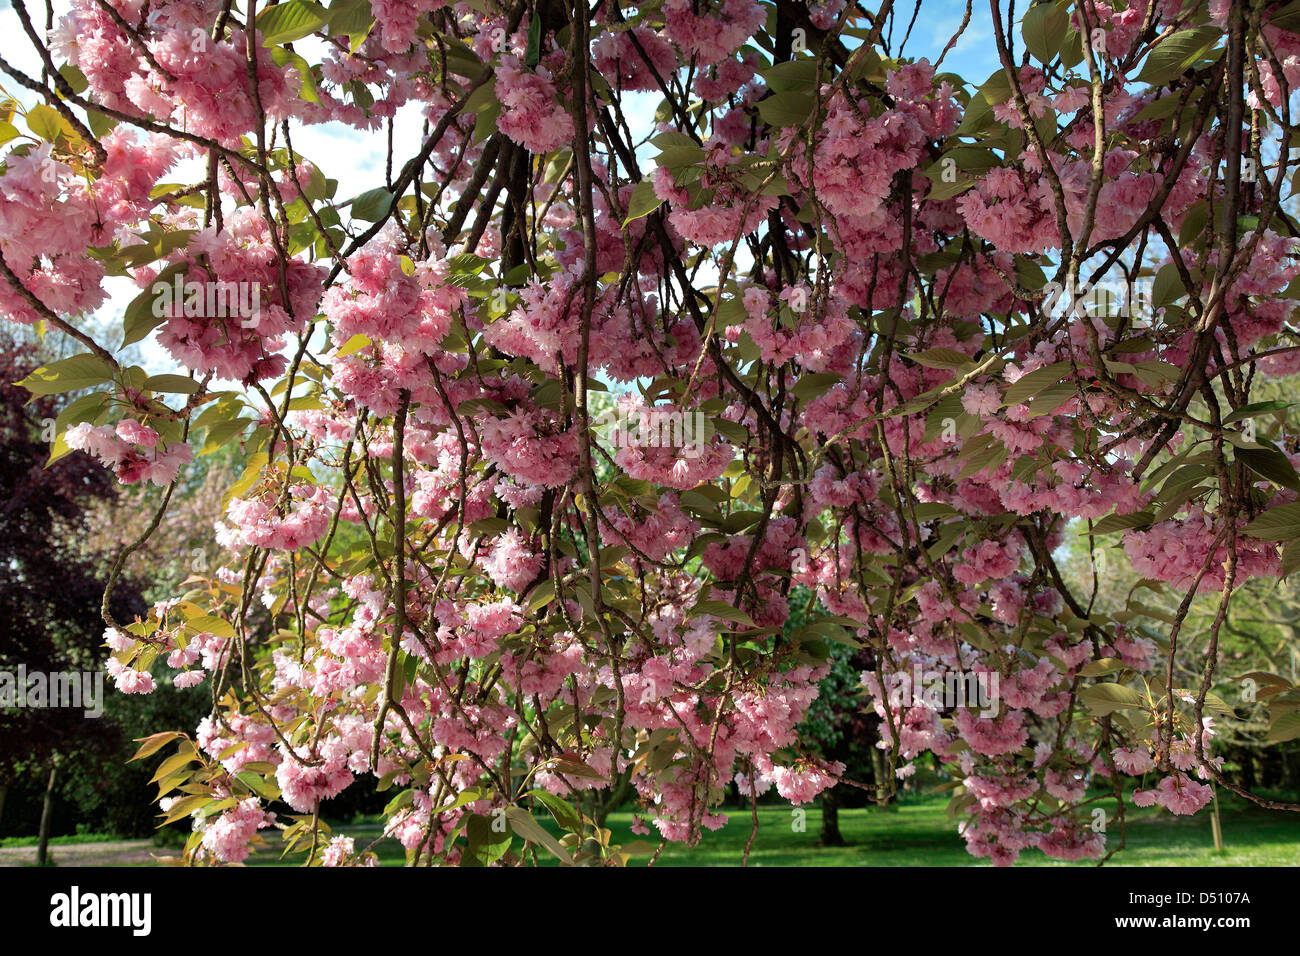 Cherry tree blossom Prunus avium, in an English Park Stock Photo